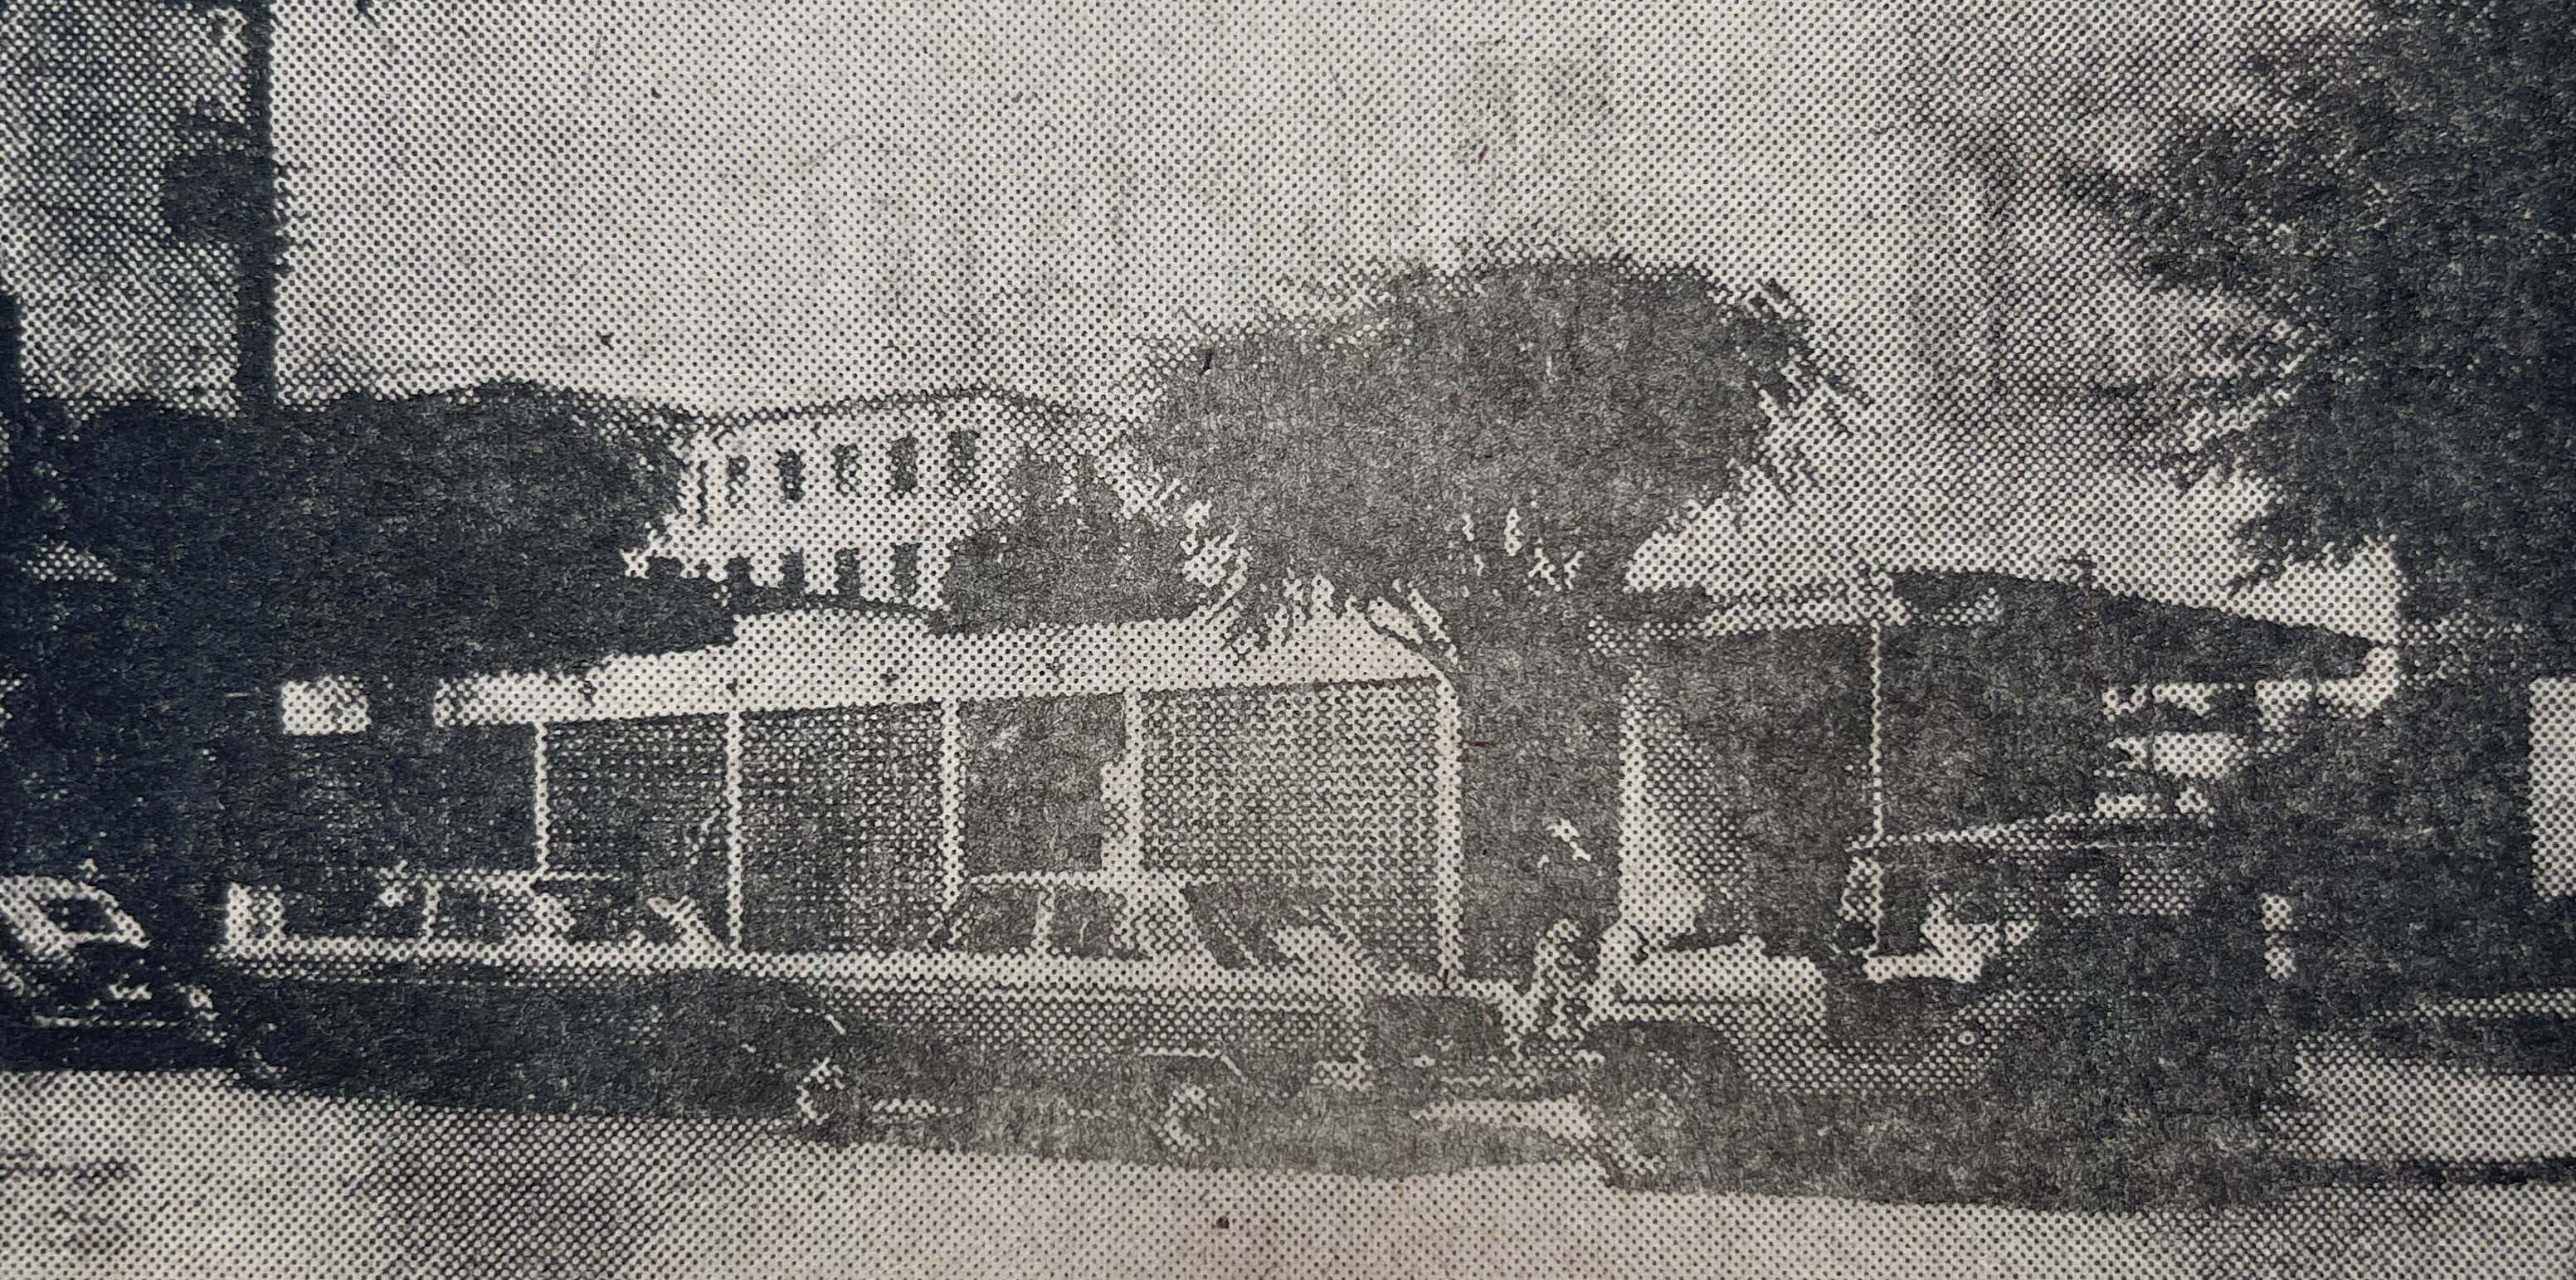 Banco da Bahia - 1967